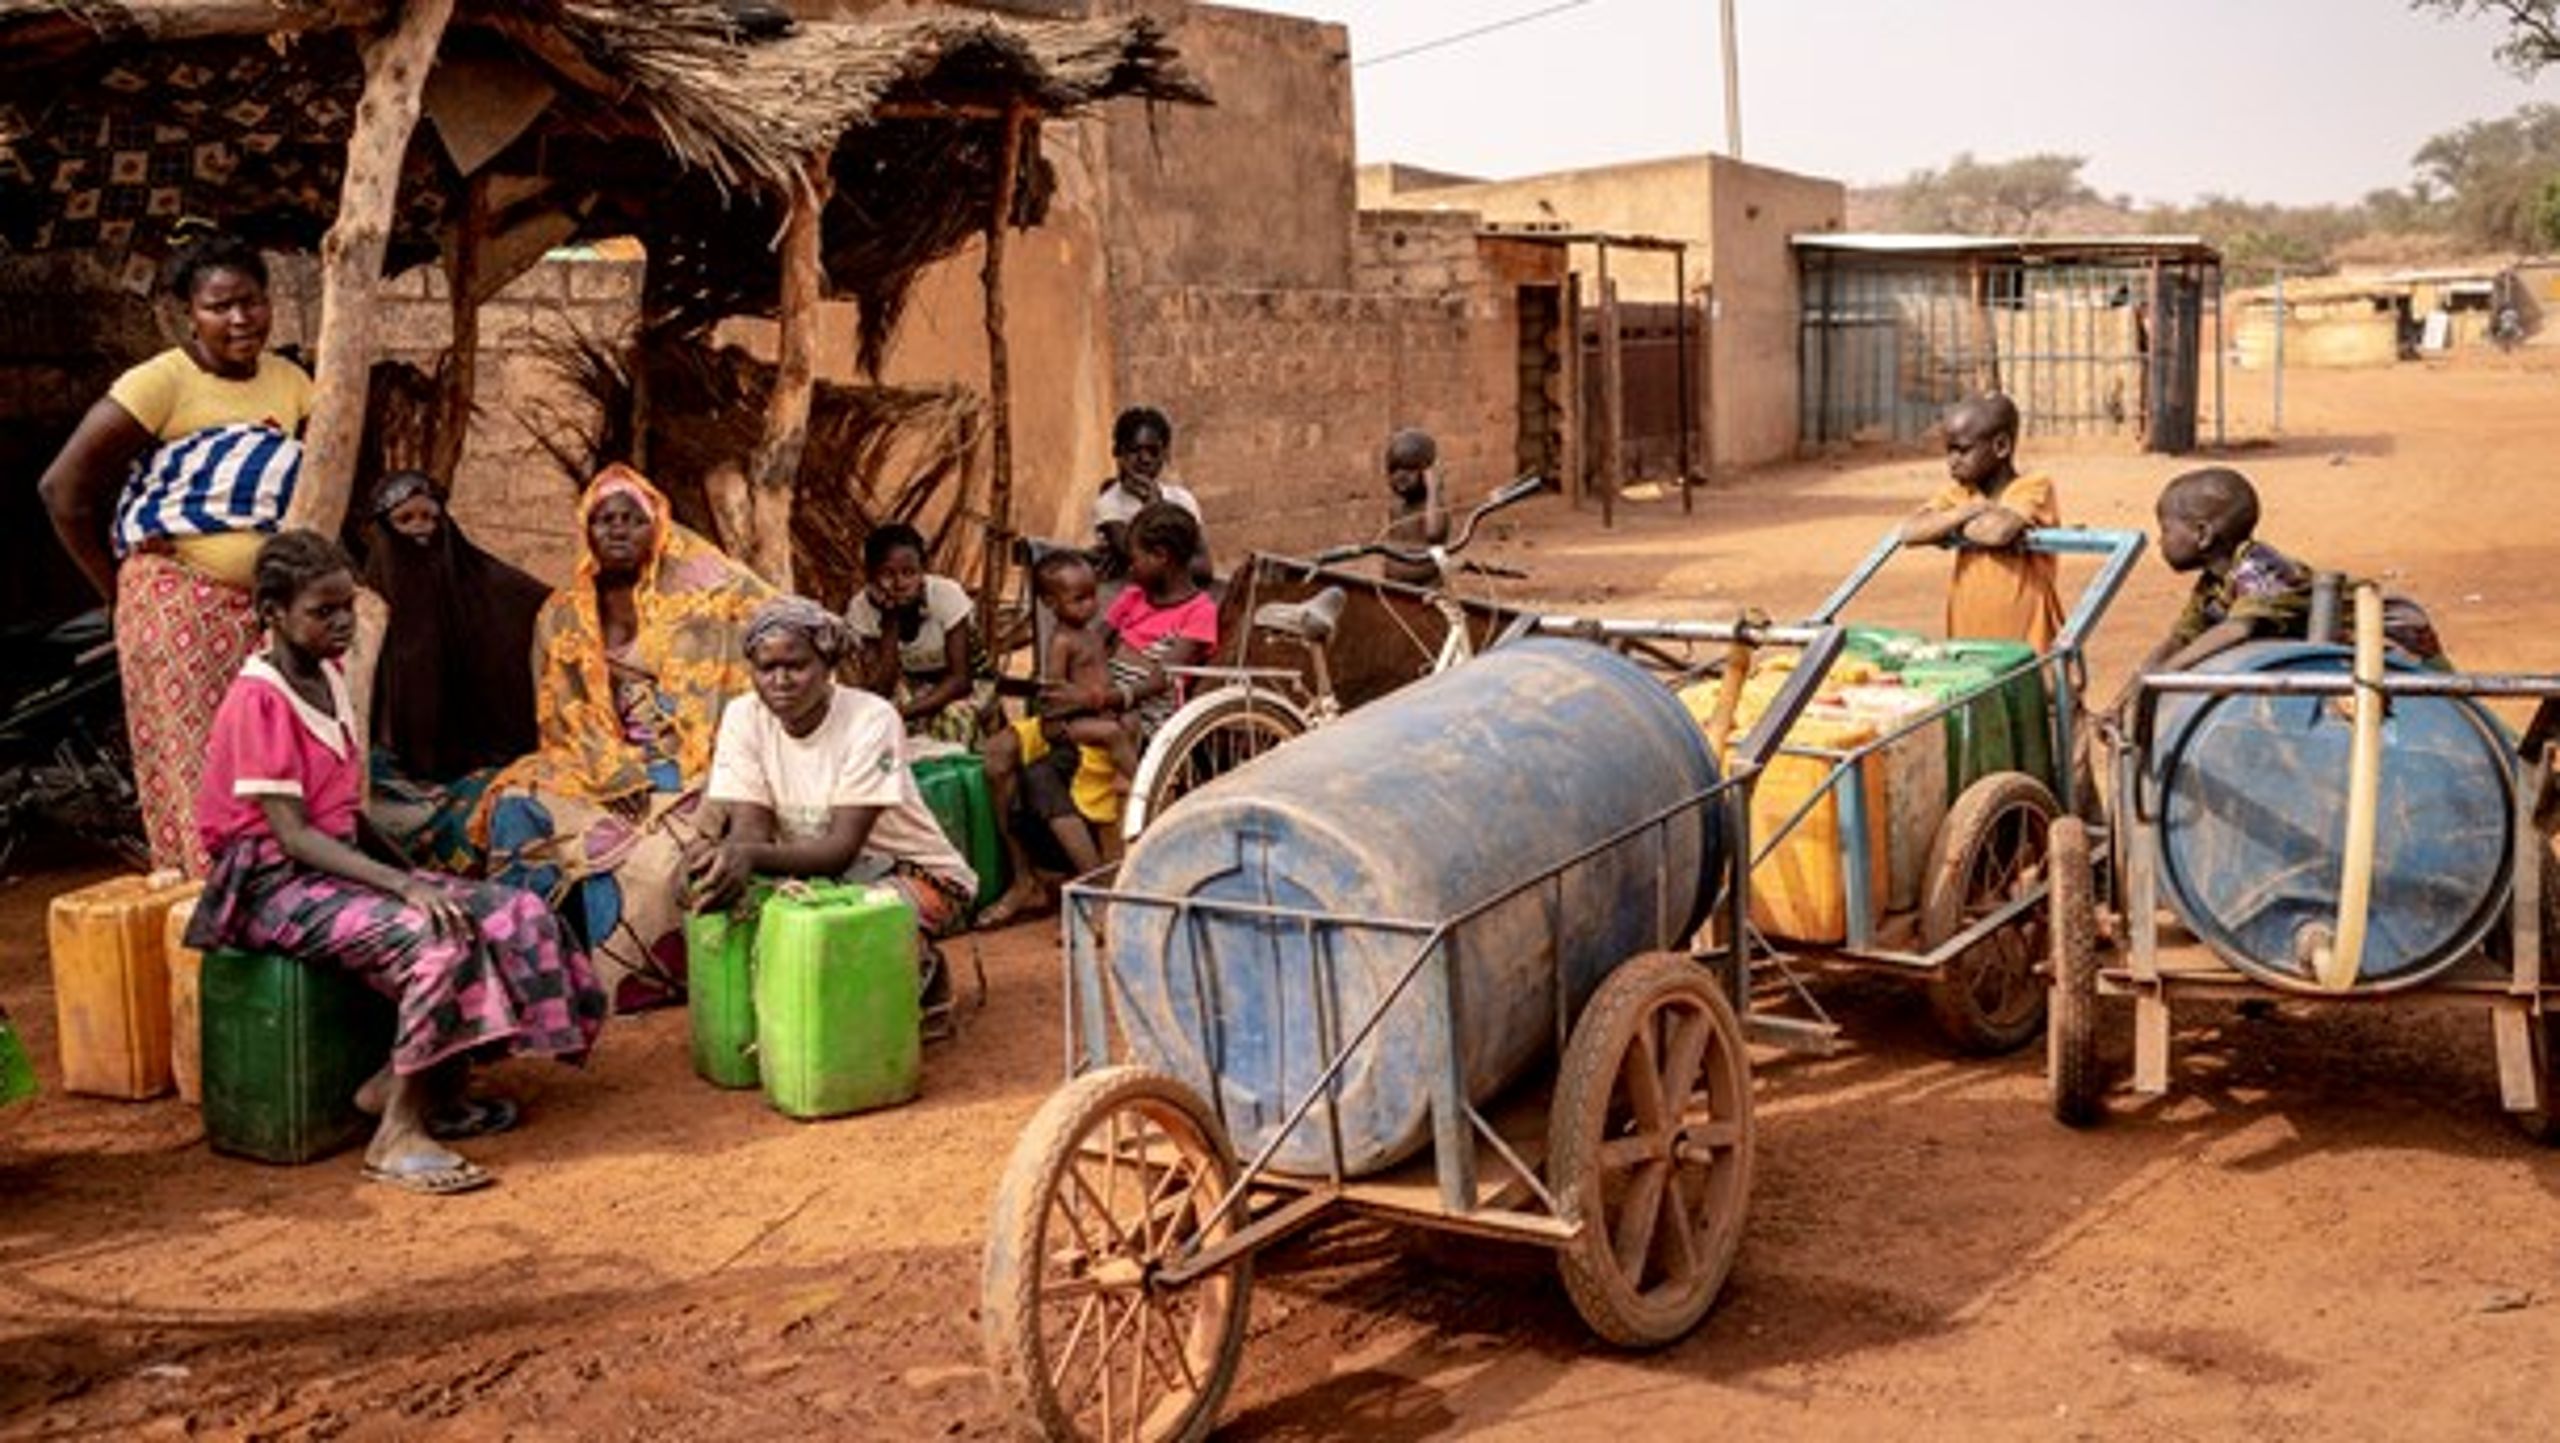 Det afslører den enorme globale ulighed, når man i Burkina Faso kan mønstre én respirator til en befolkning, der er tre gange større end Danmarks, skriver Lars Engberg-Pedersen.&nbsp;